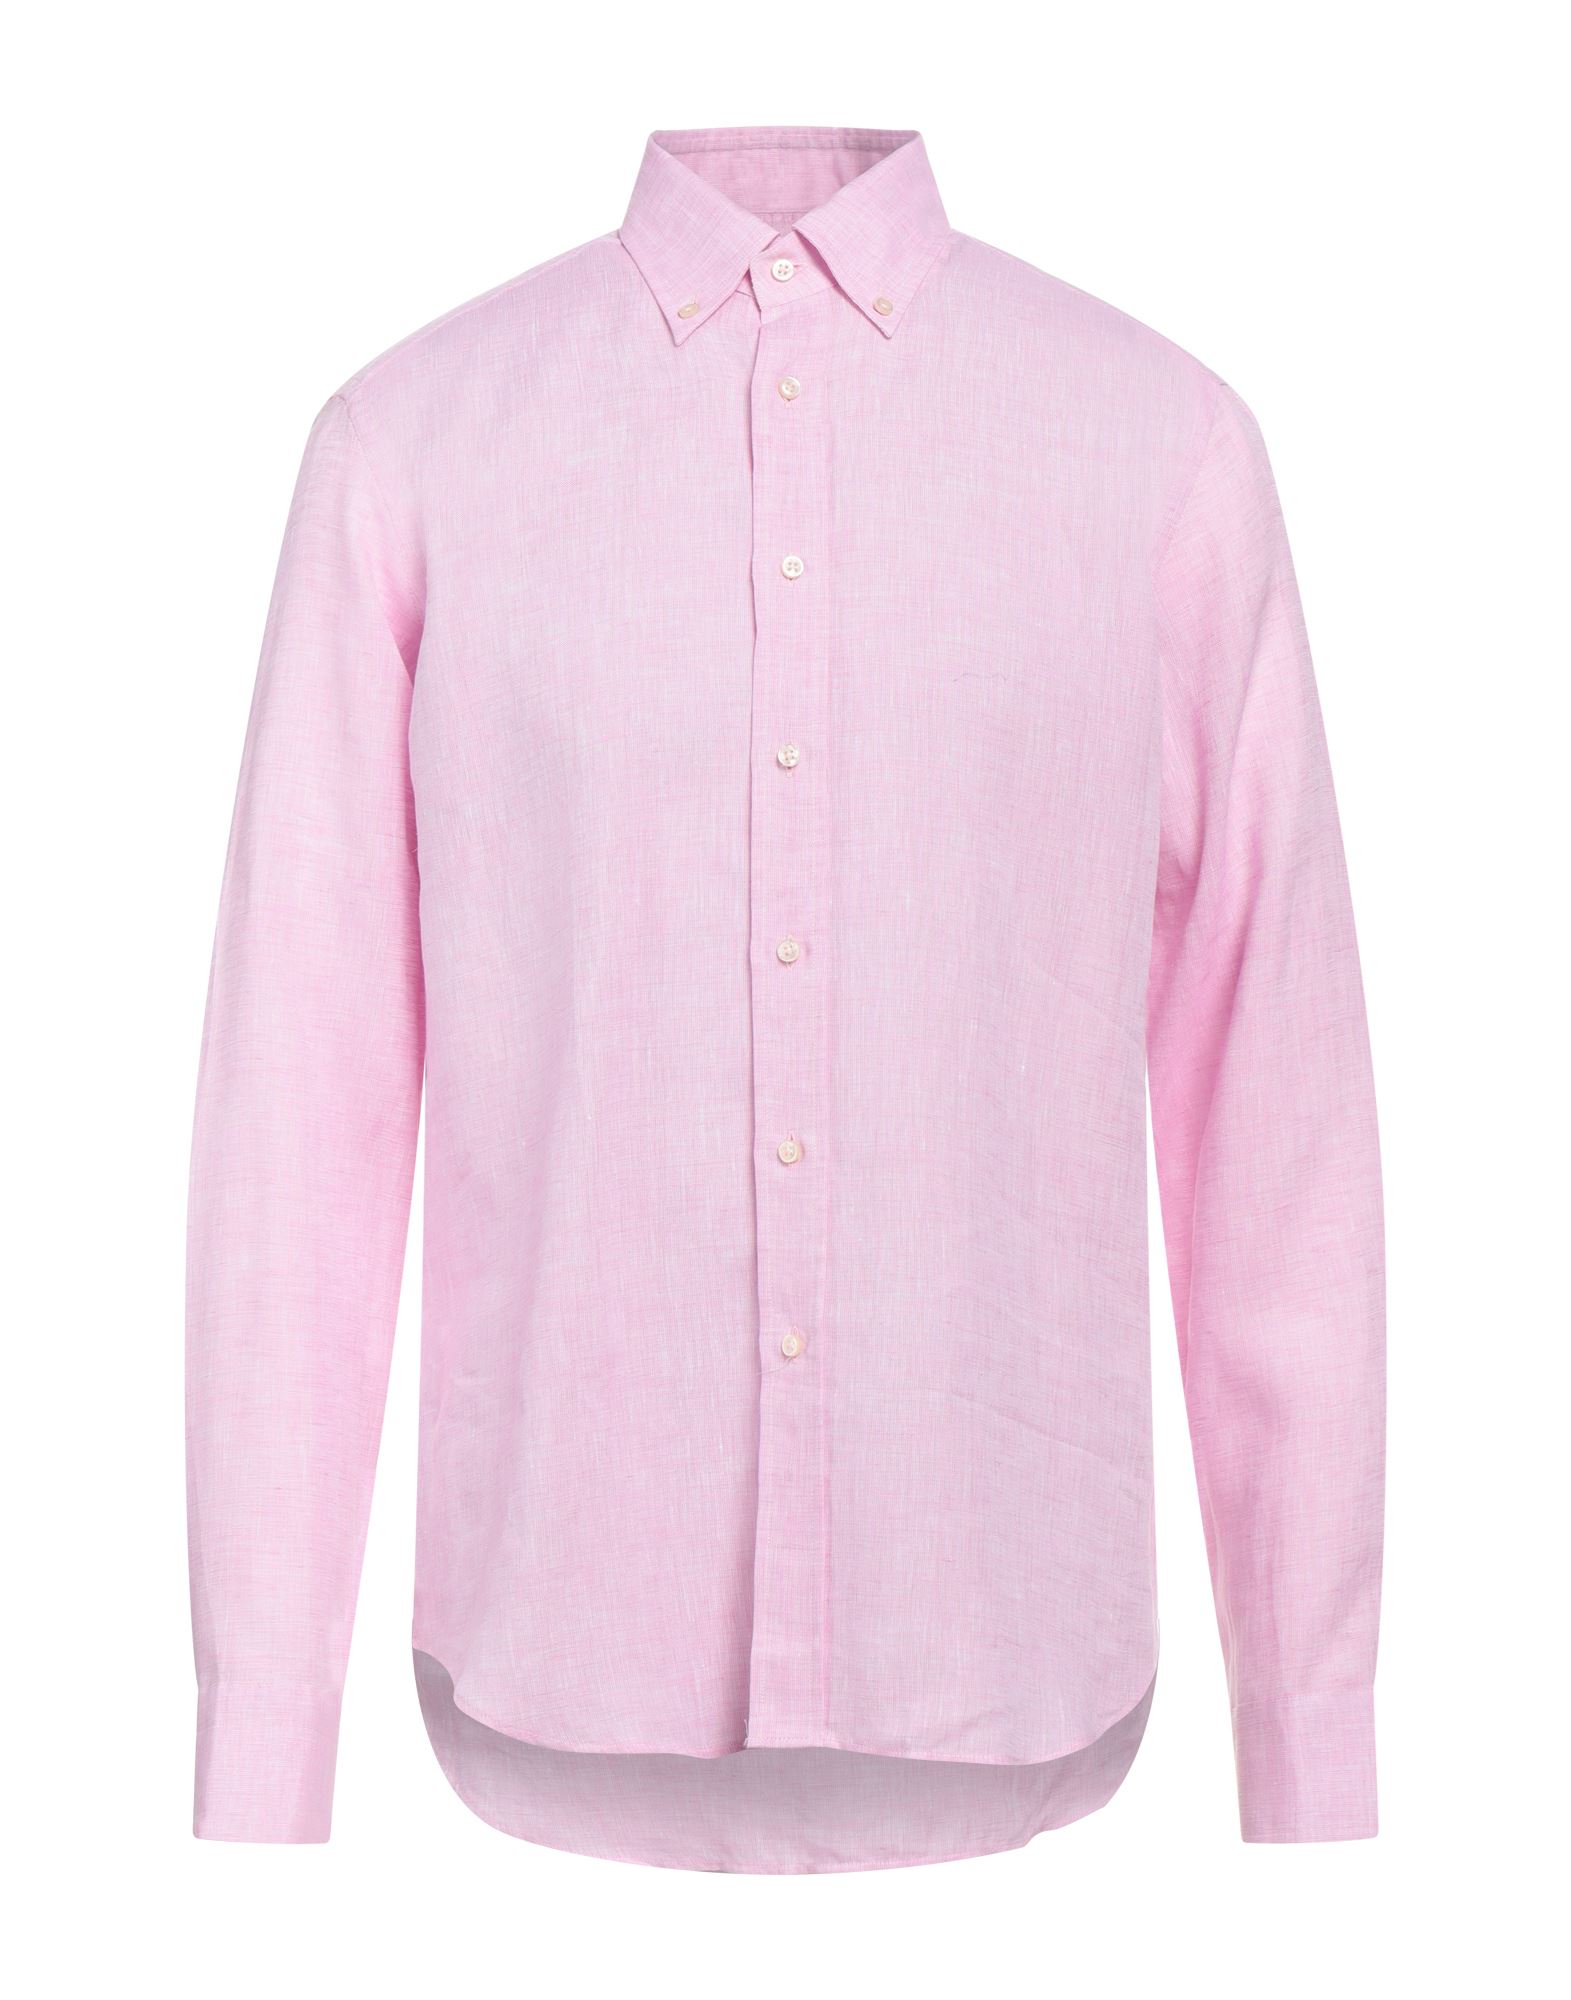 Robert Friedman Shirts In Pink